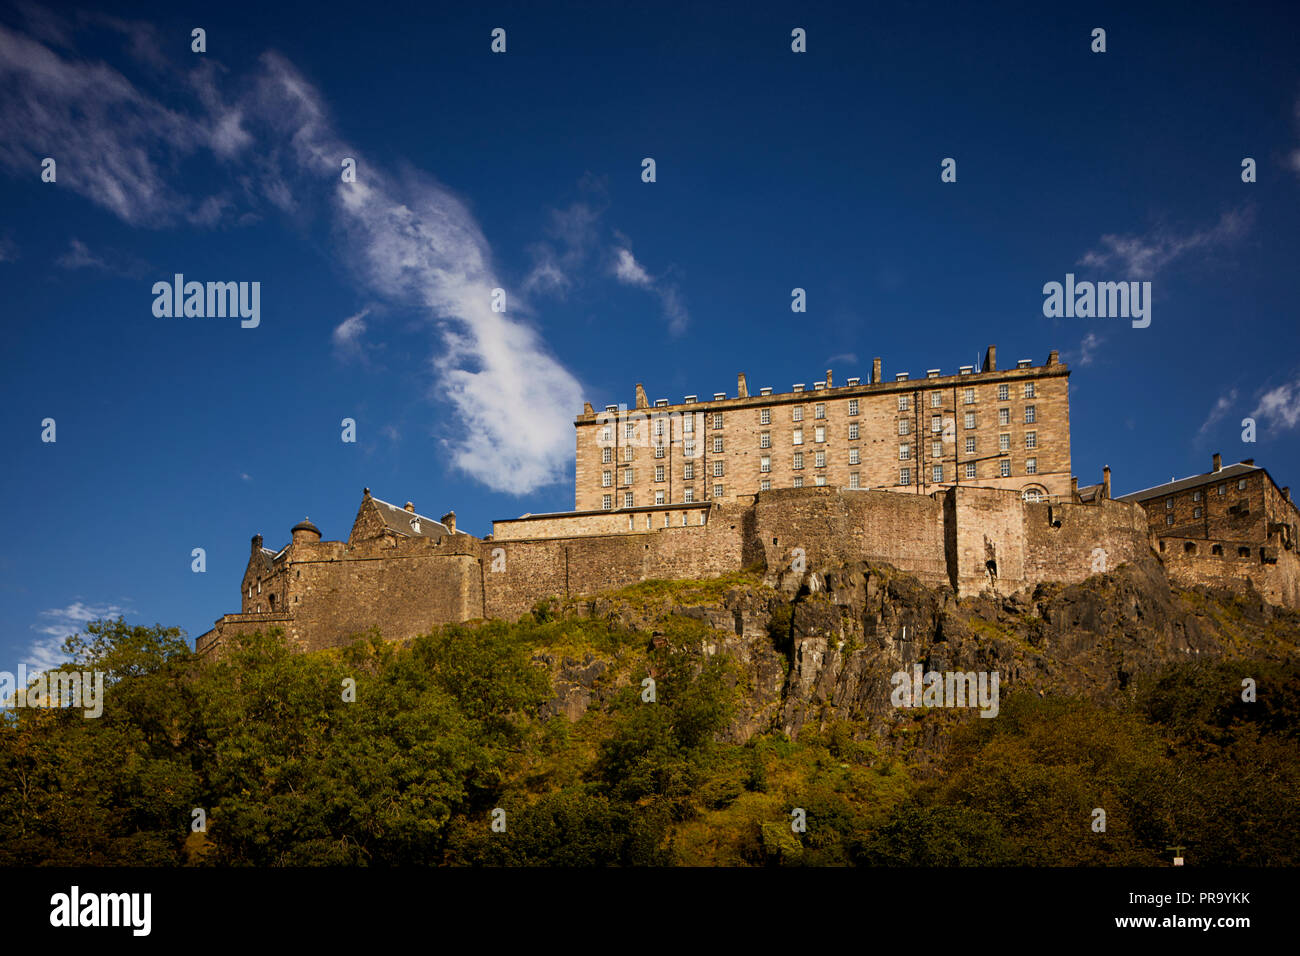 Punto di riferimento della città storica fortezza che domina lo skyline in una giornata di sole Castello di Edimburgo south point la nuova caserma costruita su una roccia vulcanica Foto Stock